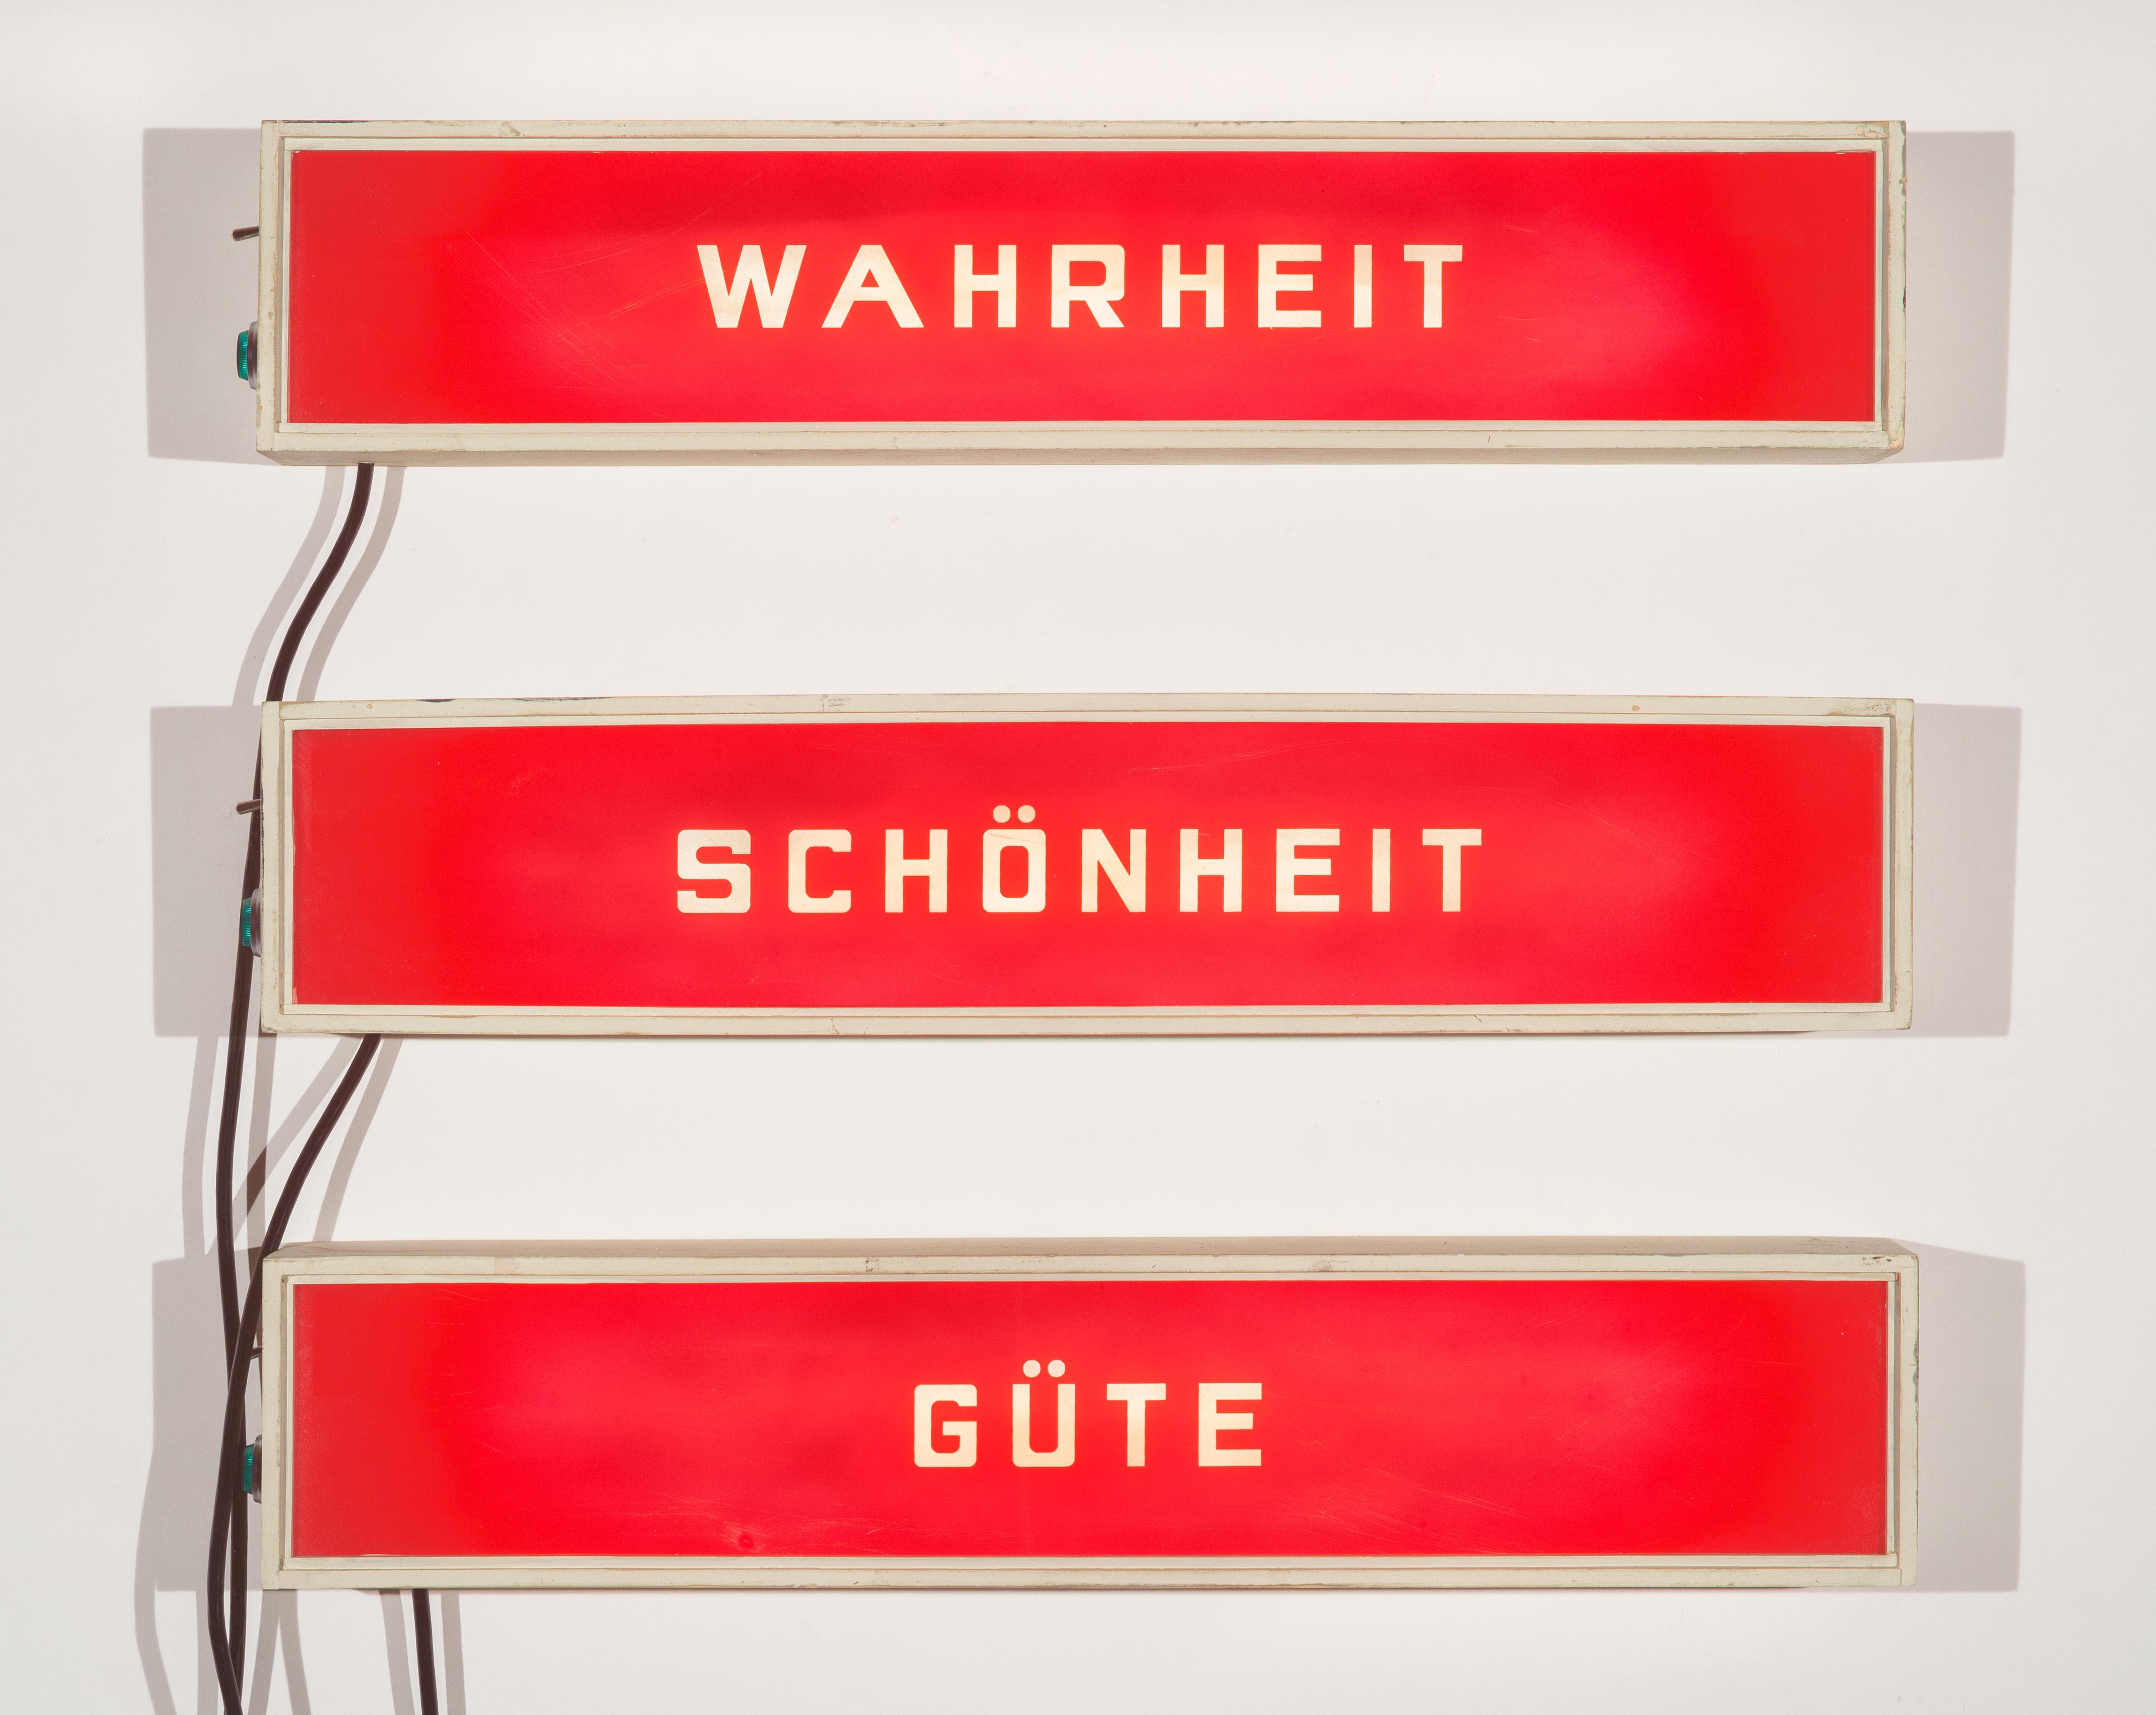 Wahrheit, Schönheit, Güte (lighted signs) - Sculpture by Skylar Fein